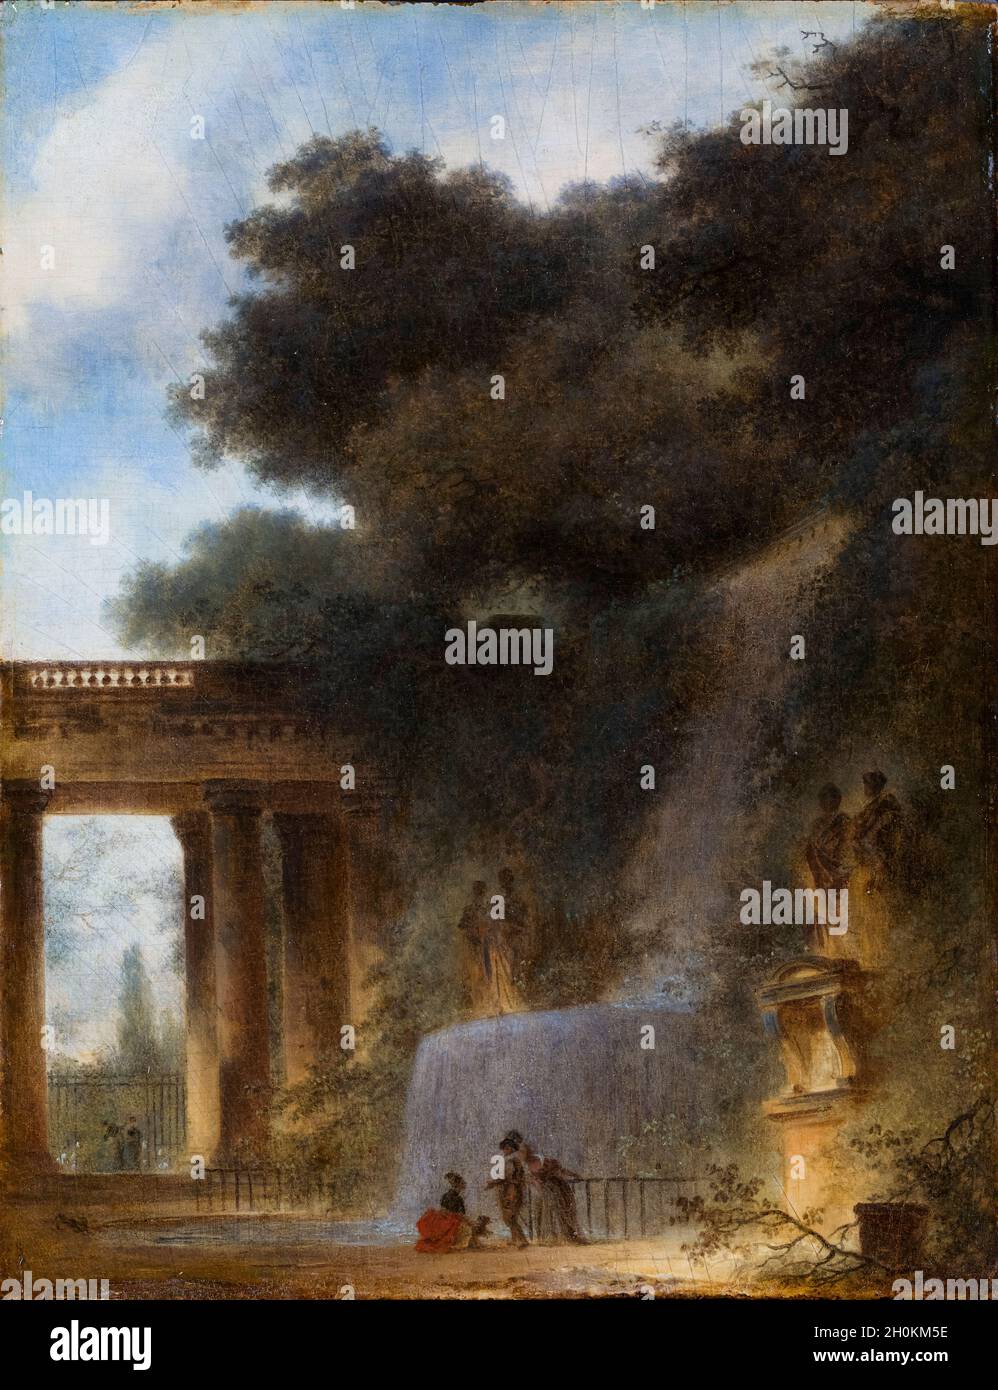 Jean Honoré Fragonard, la Cascade, peinture de paysage, vers 1775 Banque D'Images